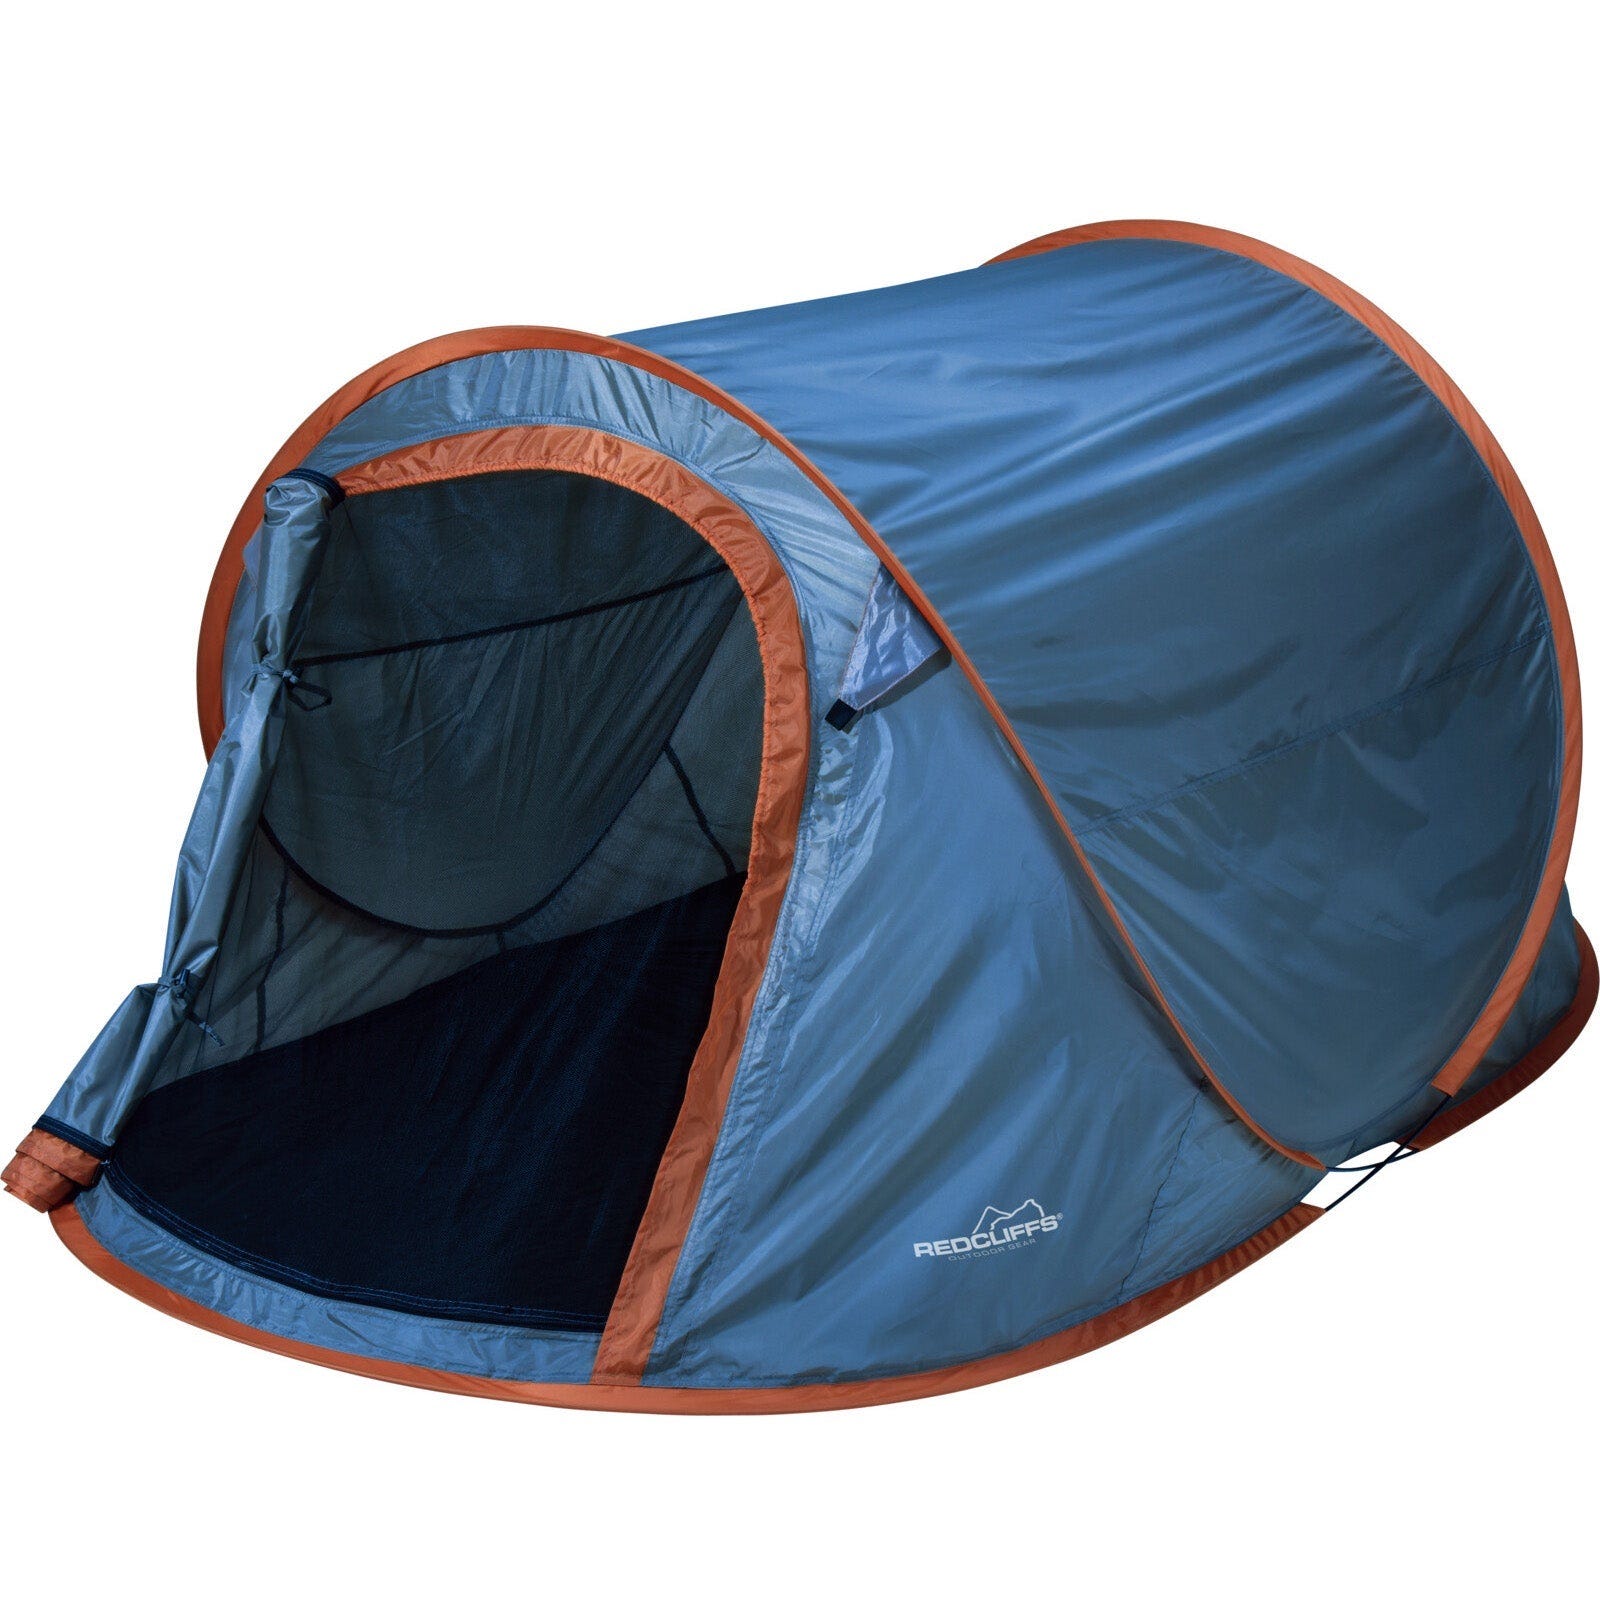 Tende E Rifugi Tenda Da Campeggio Allaperto Doccia Portatile Tende